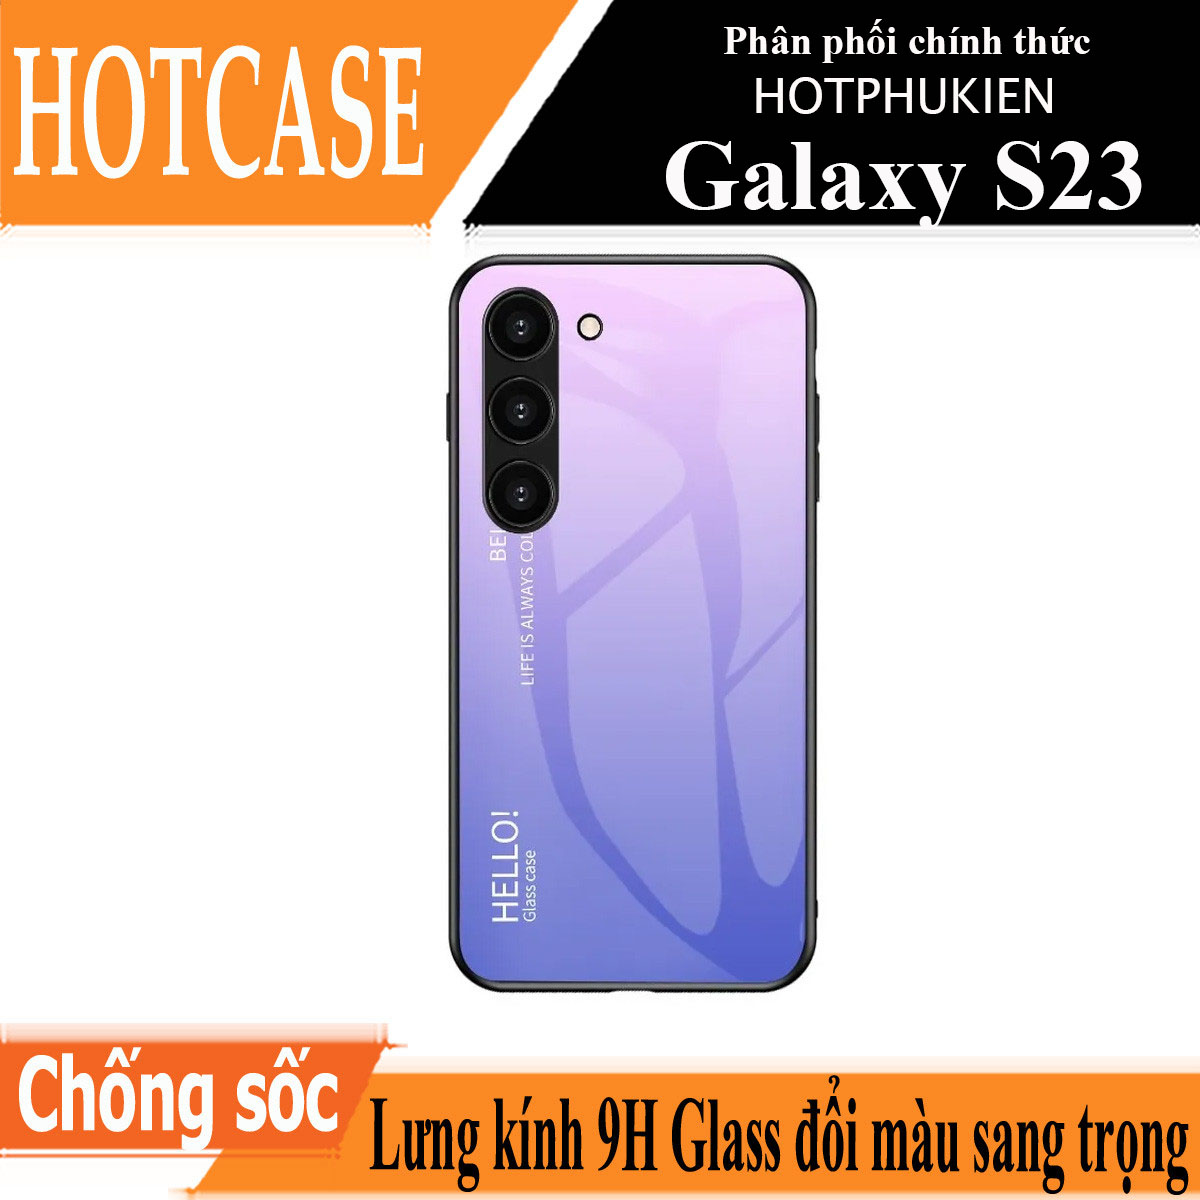 Ốp lưng kính cường lực cho Samsung Galaxy S23 hiệu HOTCASE Gradient Case chống sốc chống va đập, hiệu ứng gradient theo góc nhìn, chống sốc cực tốt, chất liệu cao cấp